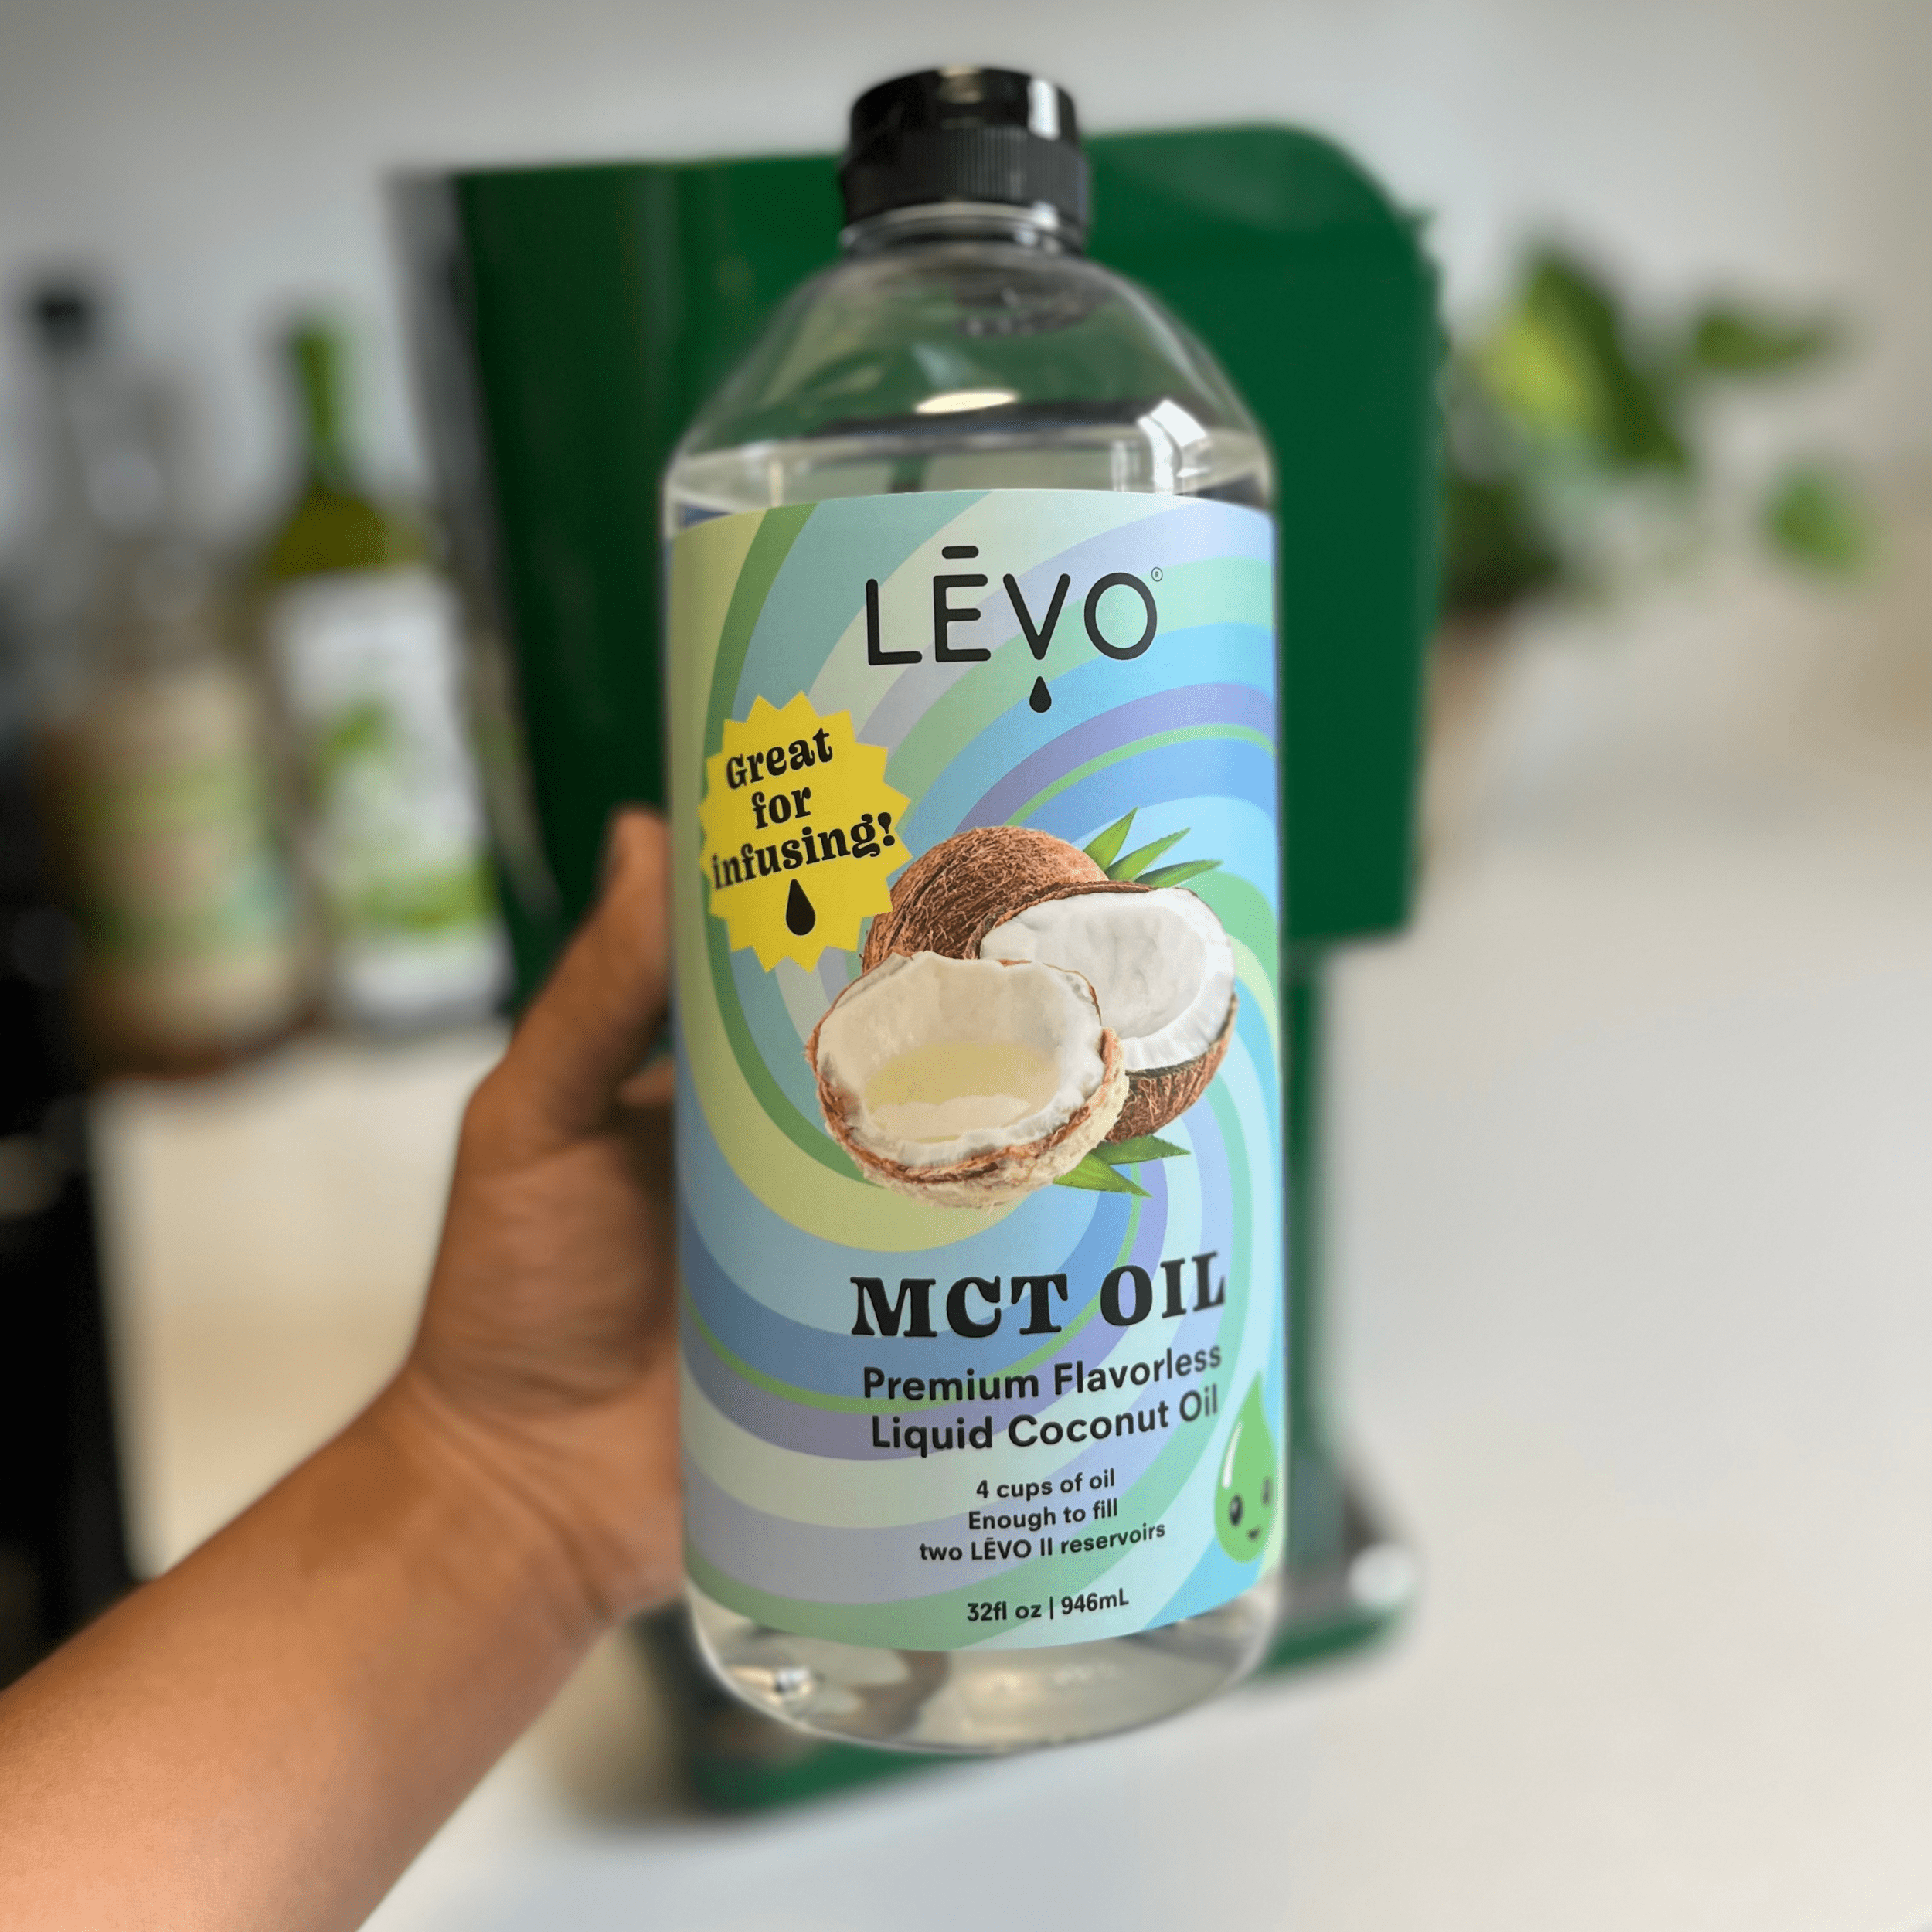 Premium MCT Liquid Coconut Oil 32oz (2 pack)